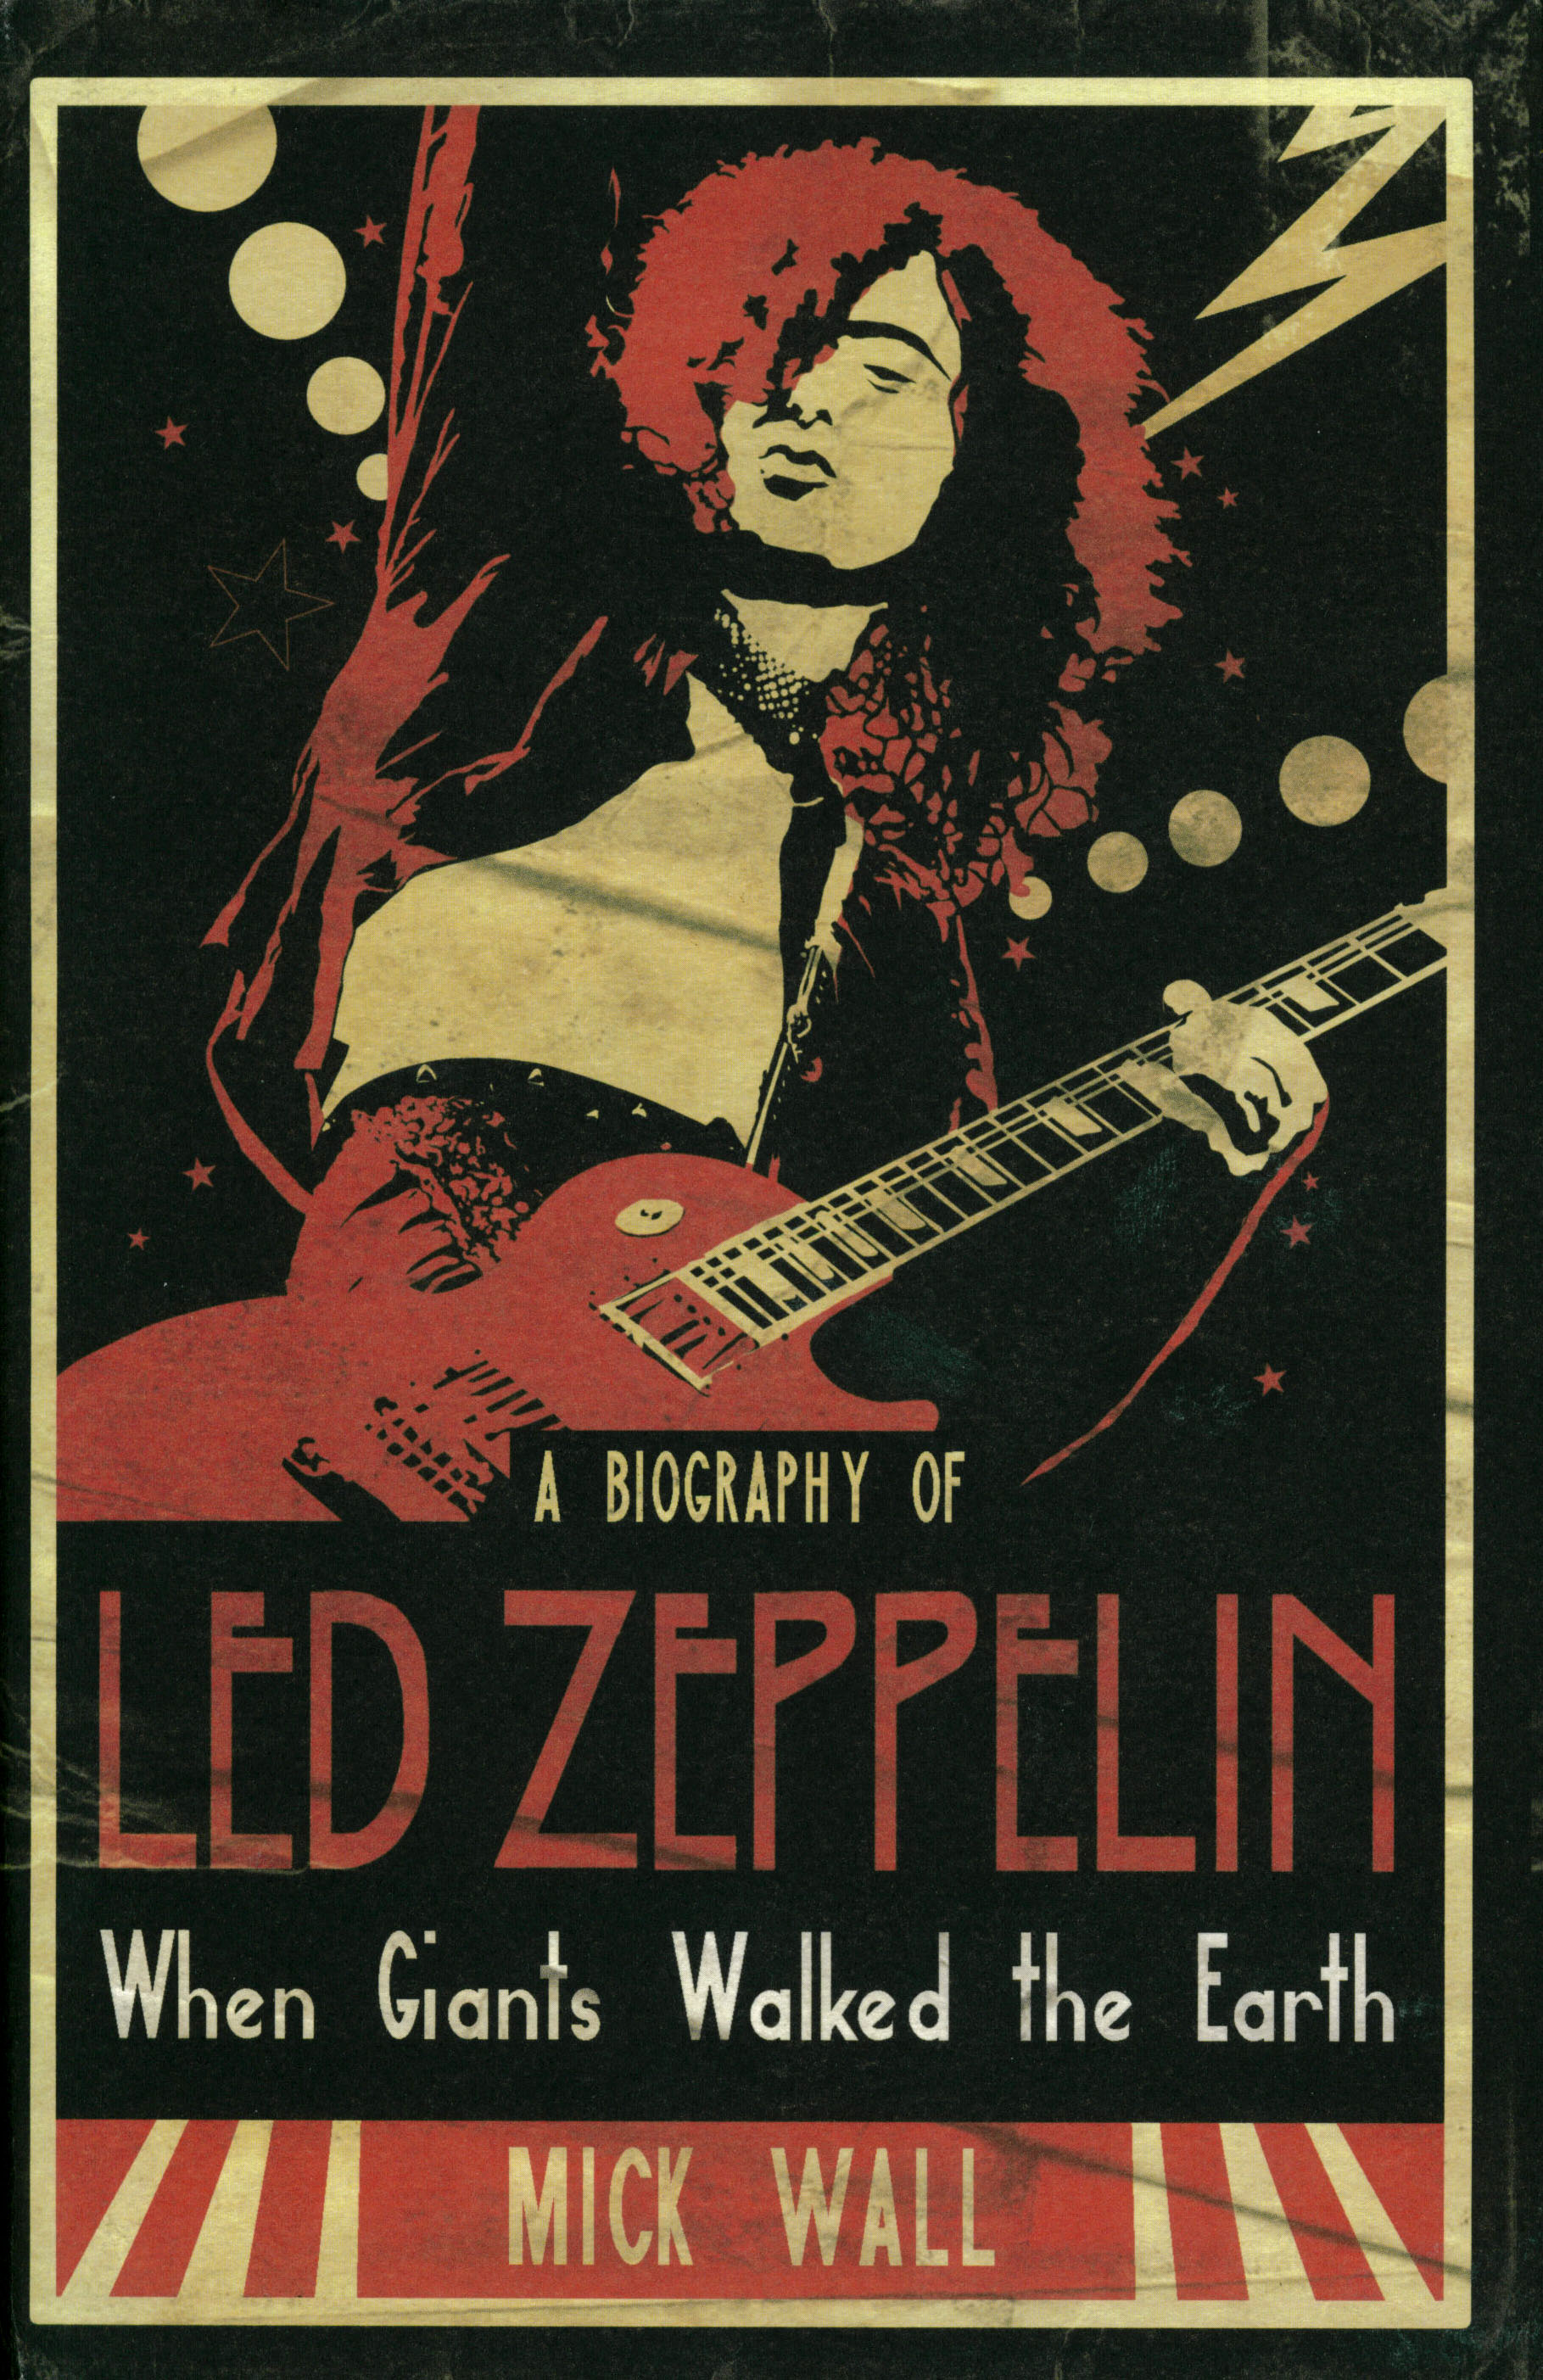 Led Zeppelin Wallpaper 1819x2806 Led Zeppelin